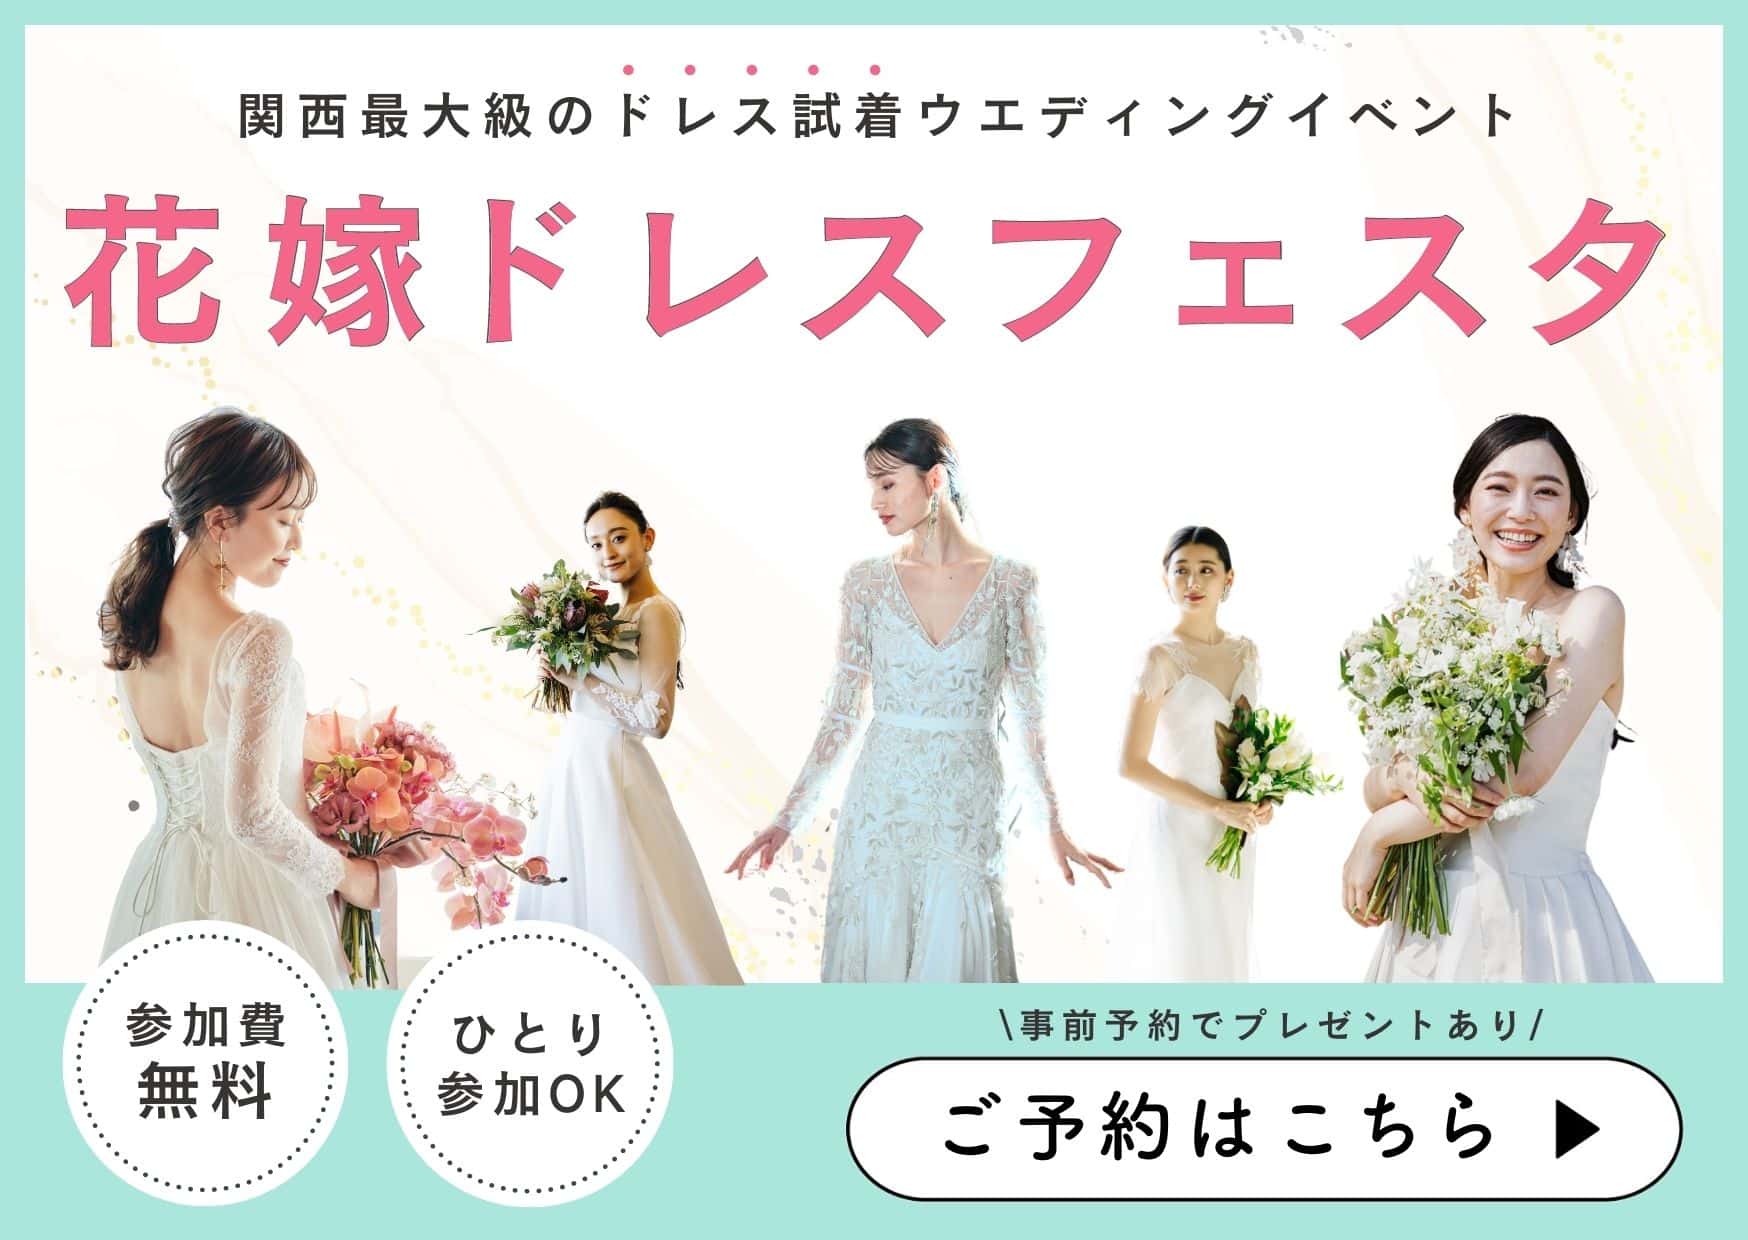 大阪でドレス試着と式場探しが無料で体験できるウエディングイベント「花嫁ドレスフェスタ」の詳細・予約はこちらのホームページへ